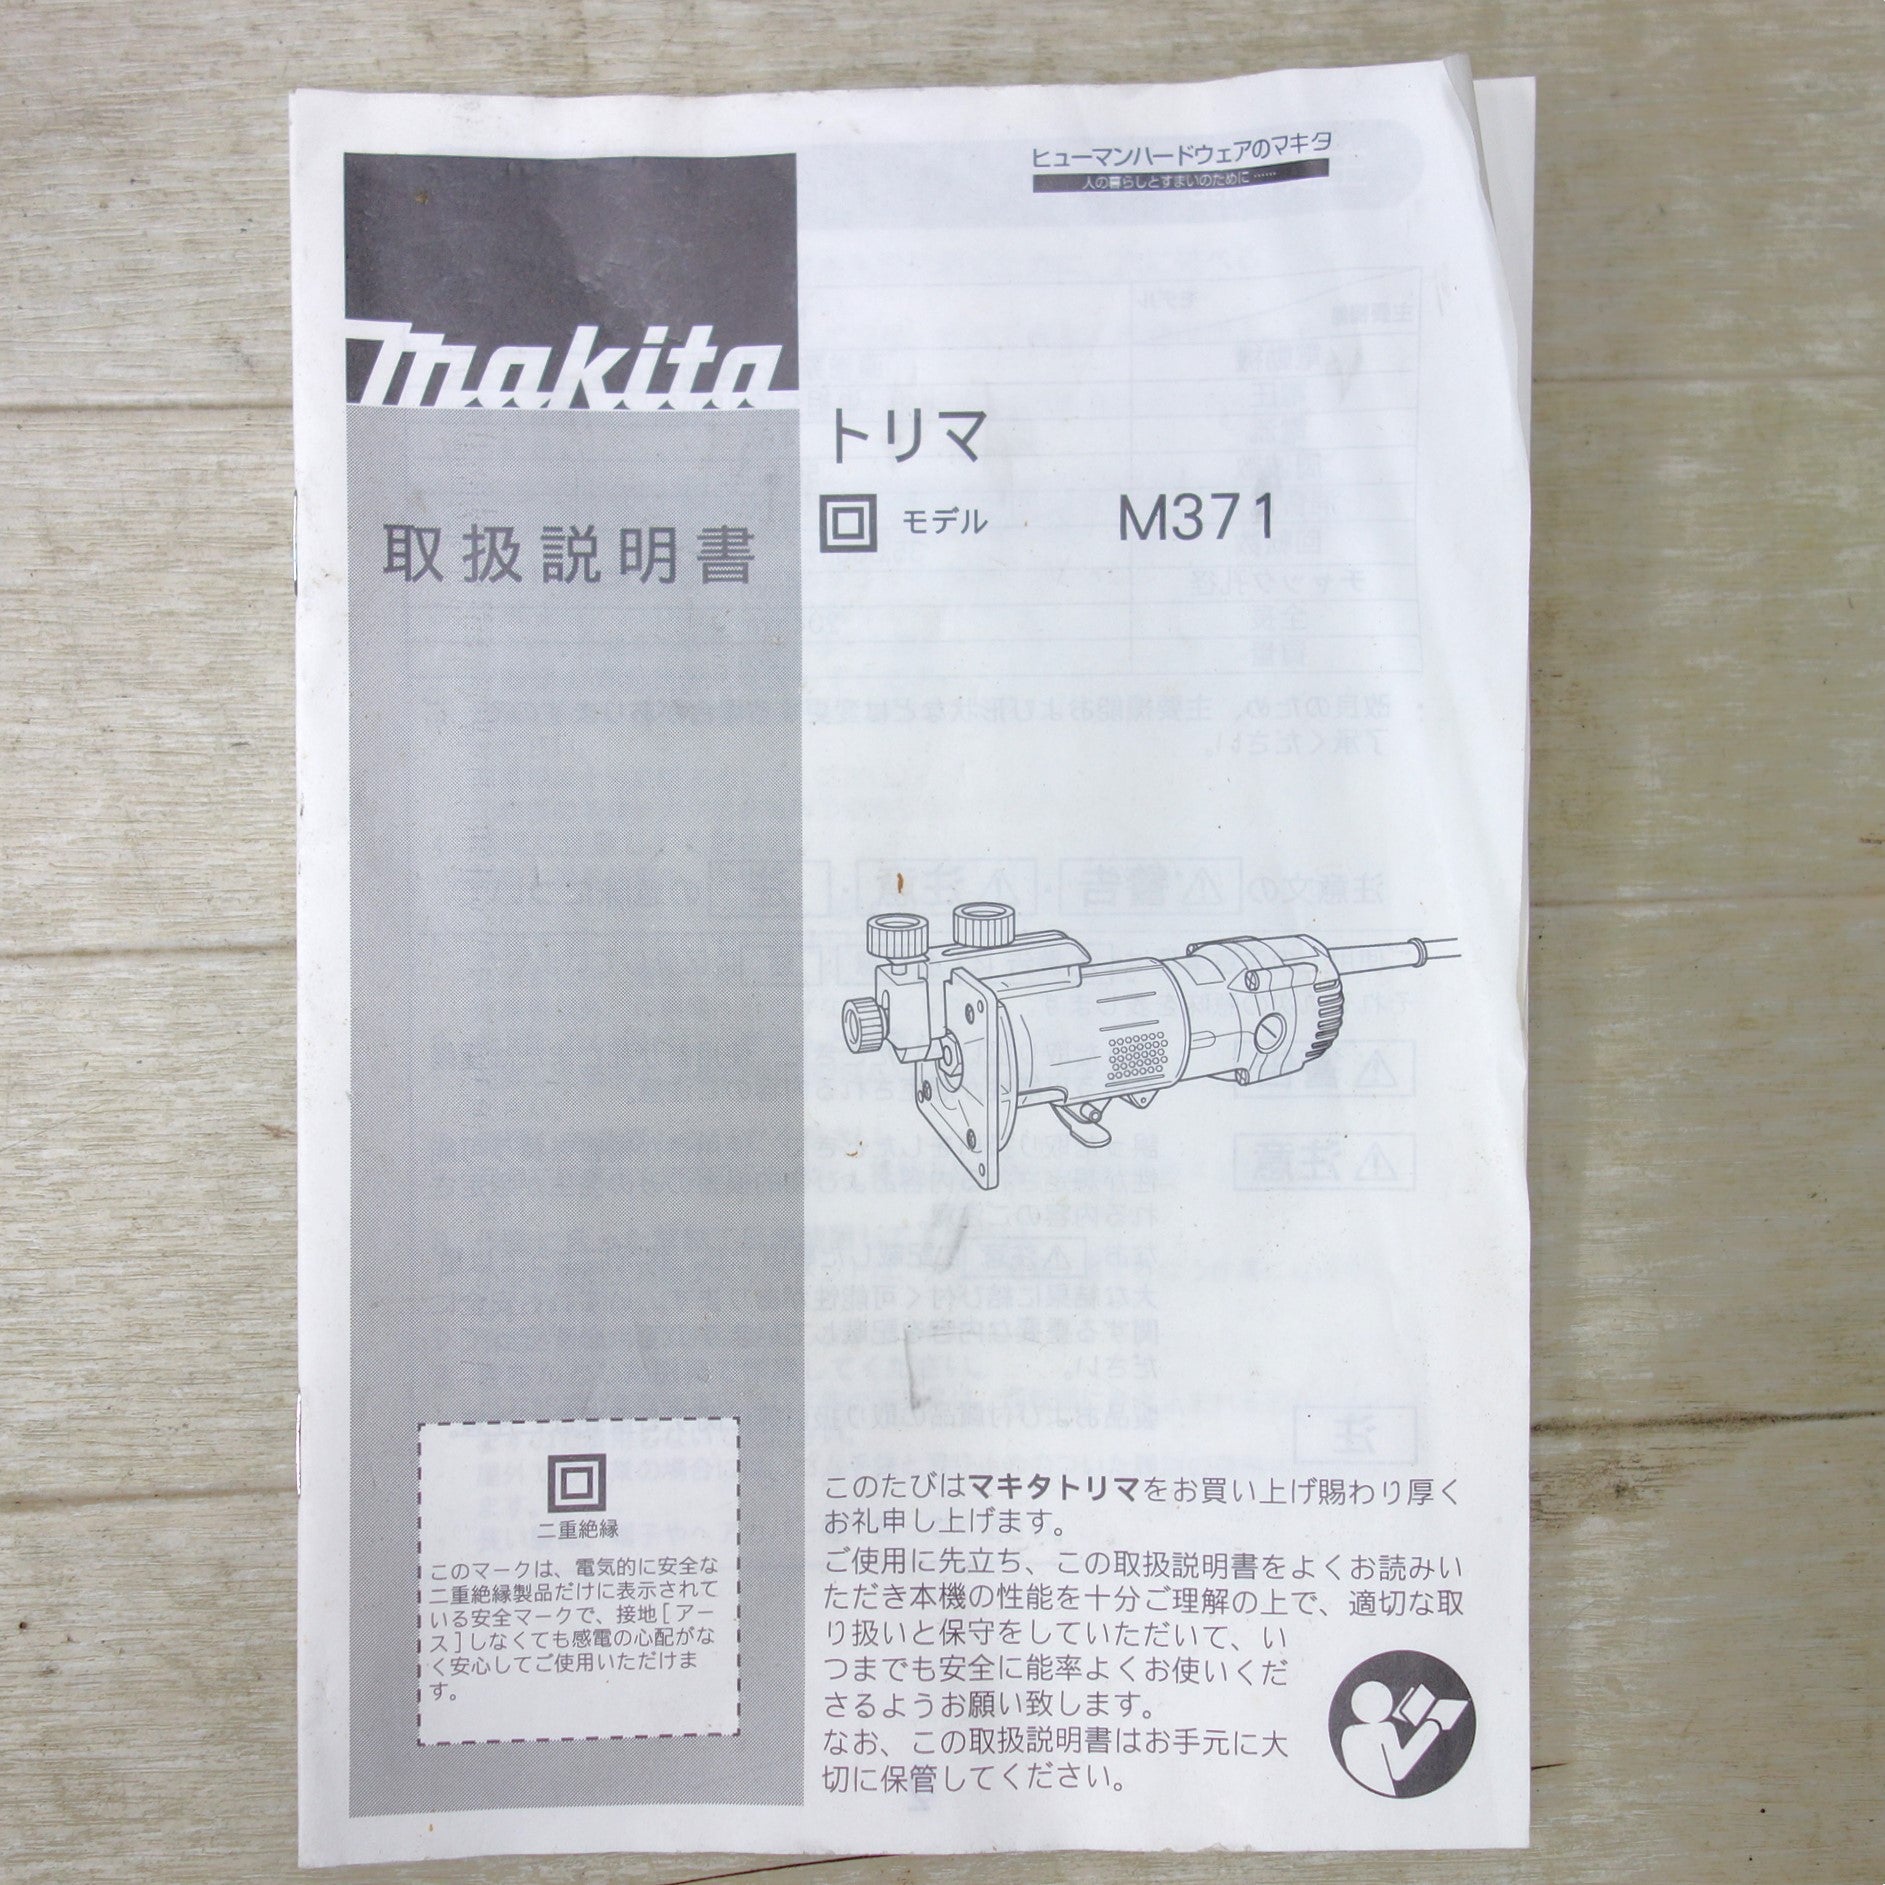 [送料無料] ◆makita マキタ トリマ M371 ルーター 電動工具 100V 50/60Hz◆